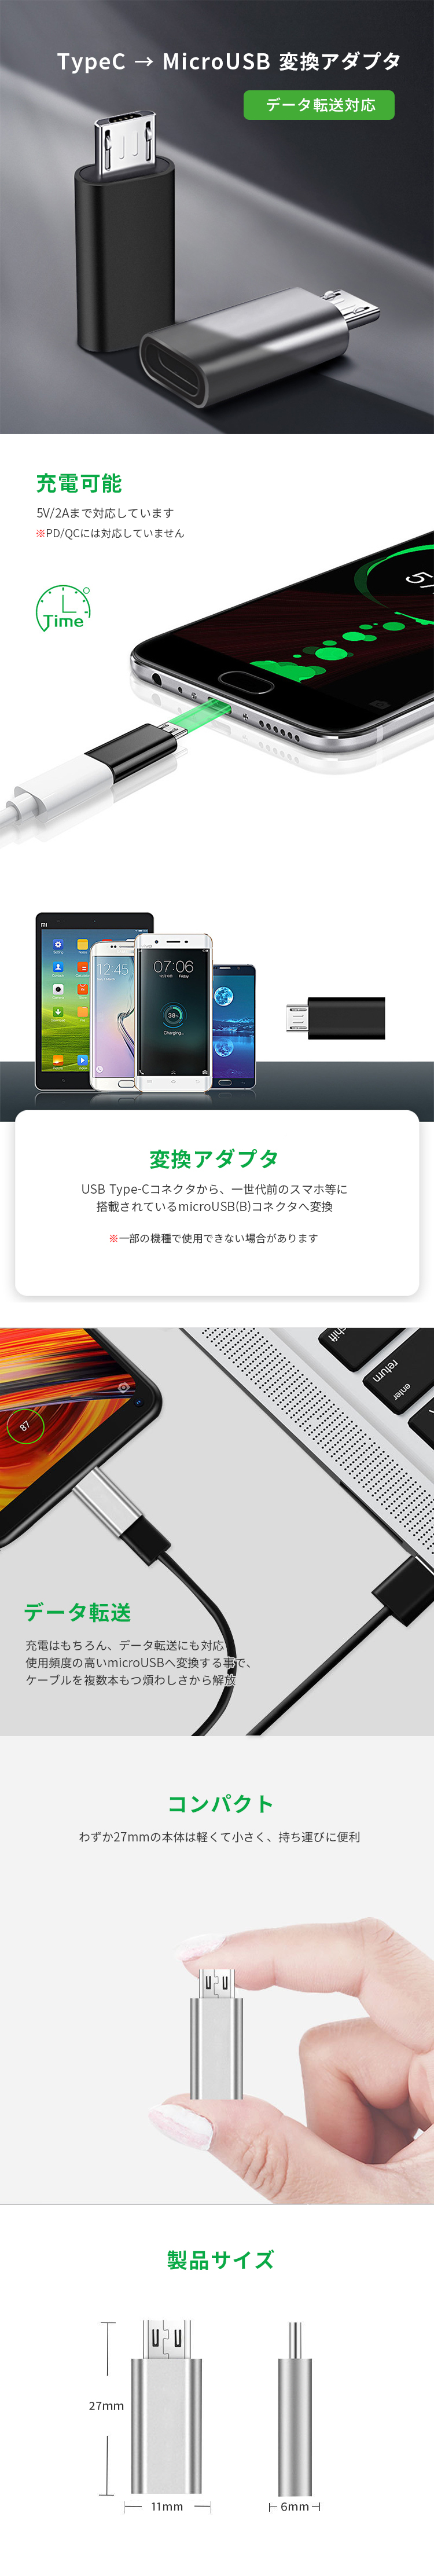 税込】 変換アダプタ iPhone to Type C 全6色 スリムタイプ アルミ製 android Xperia Samsung Huawei  Type-C スマホ スマートフォン 変換 アダプタ 送料無料 通販